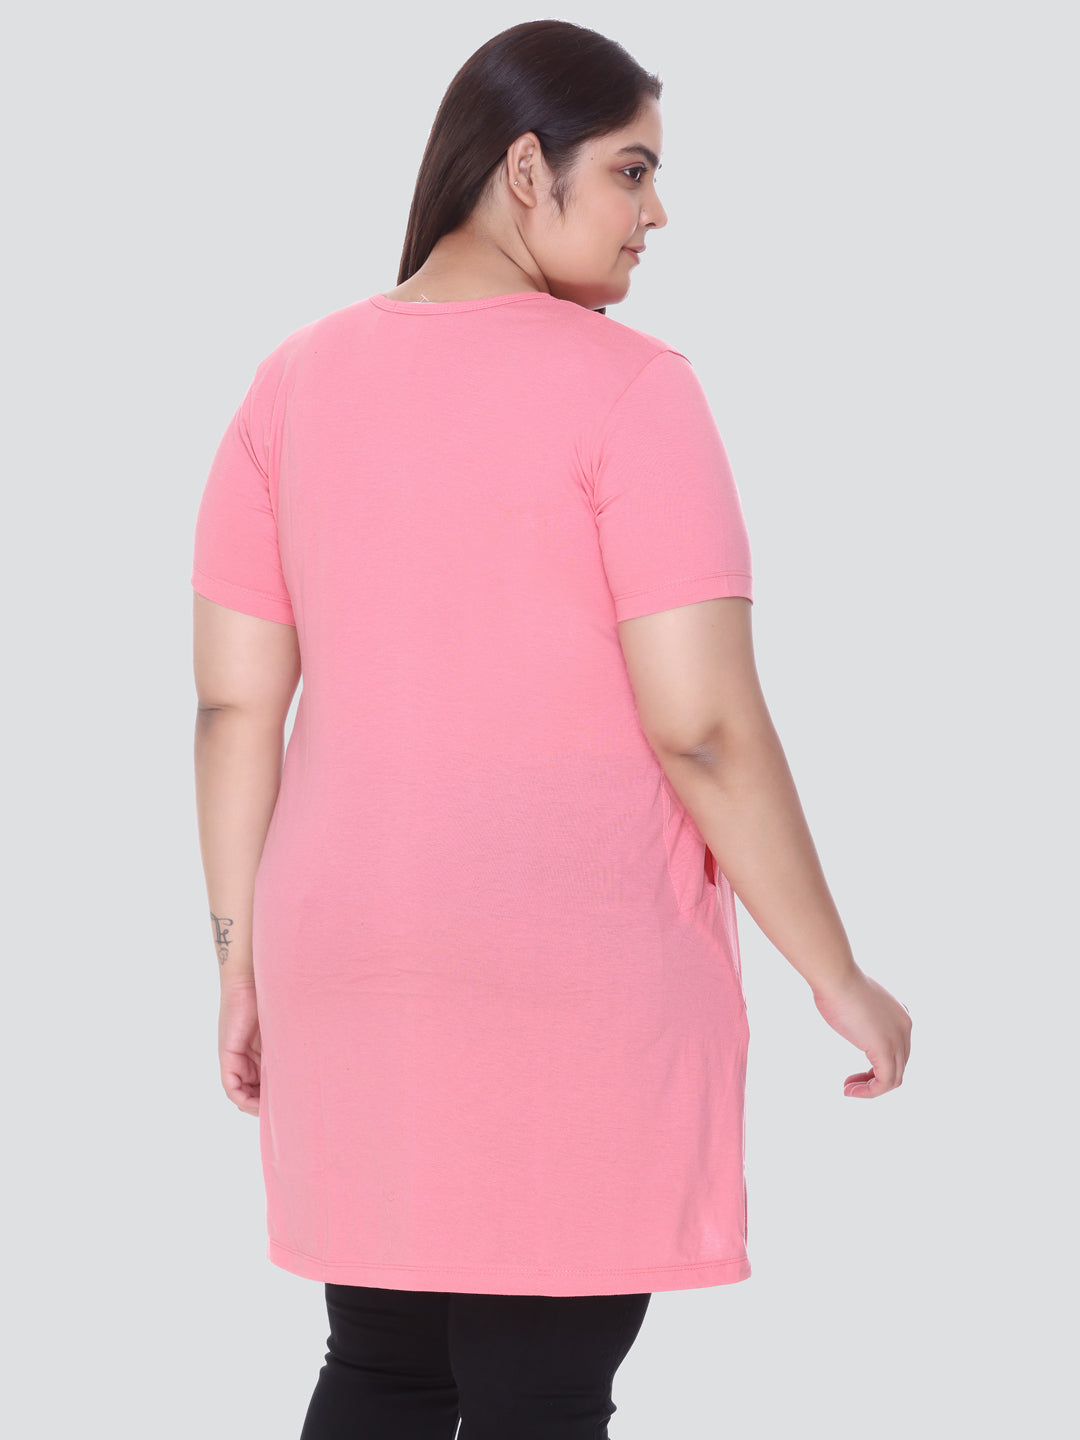 8 Colors Comfortable Plain Cotton long Shirt for Women Casual Blouse Long  Sleeve Shirt Dress plus size